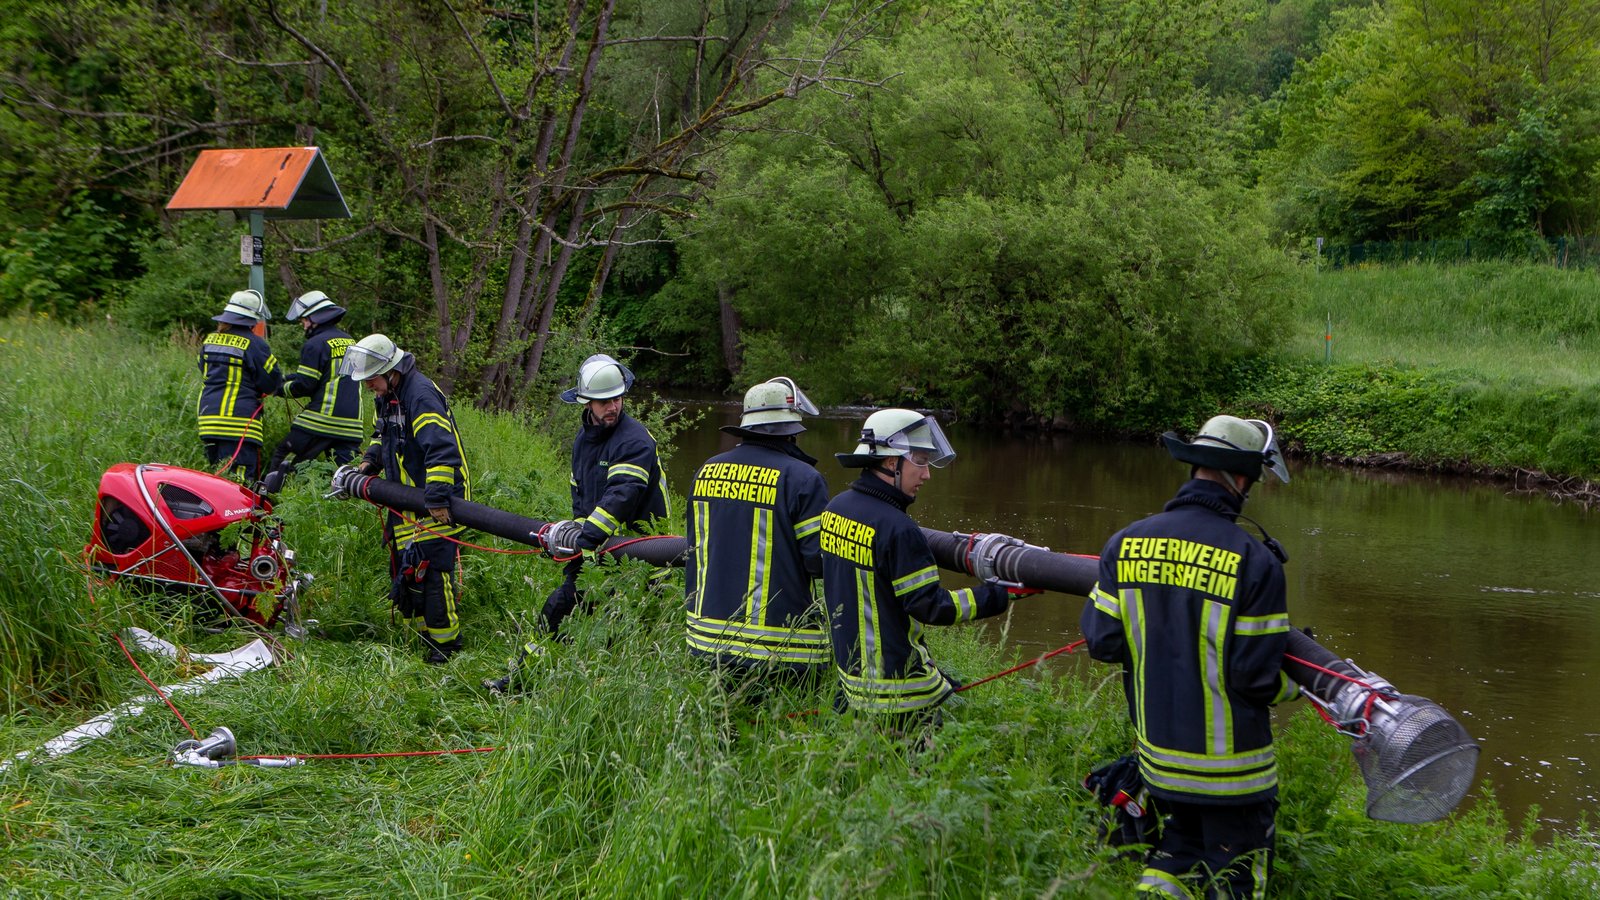 Feuerwehrleute aus Ingersheim beim Aufbau der Saugleitung für das Löschwasser an der Enz.  Foto: Bürkle